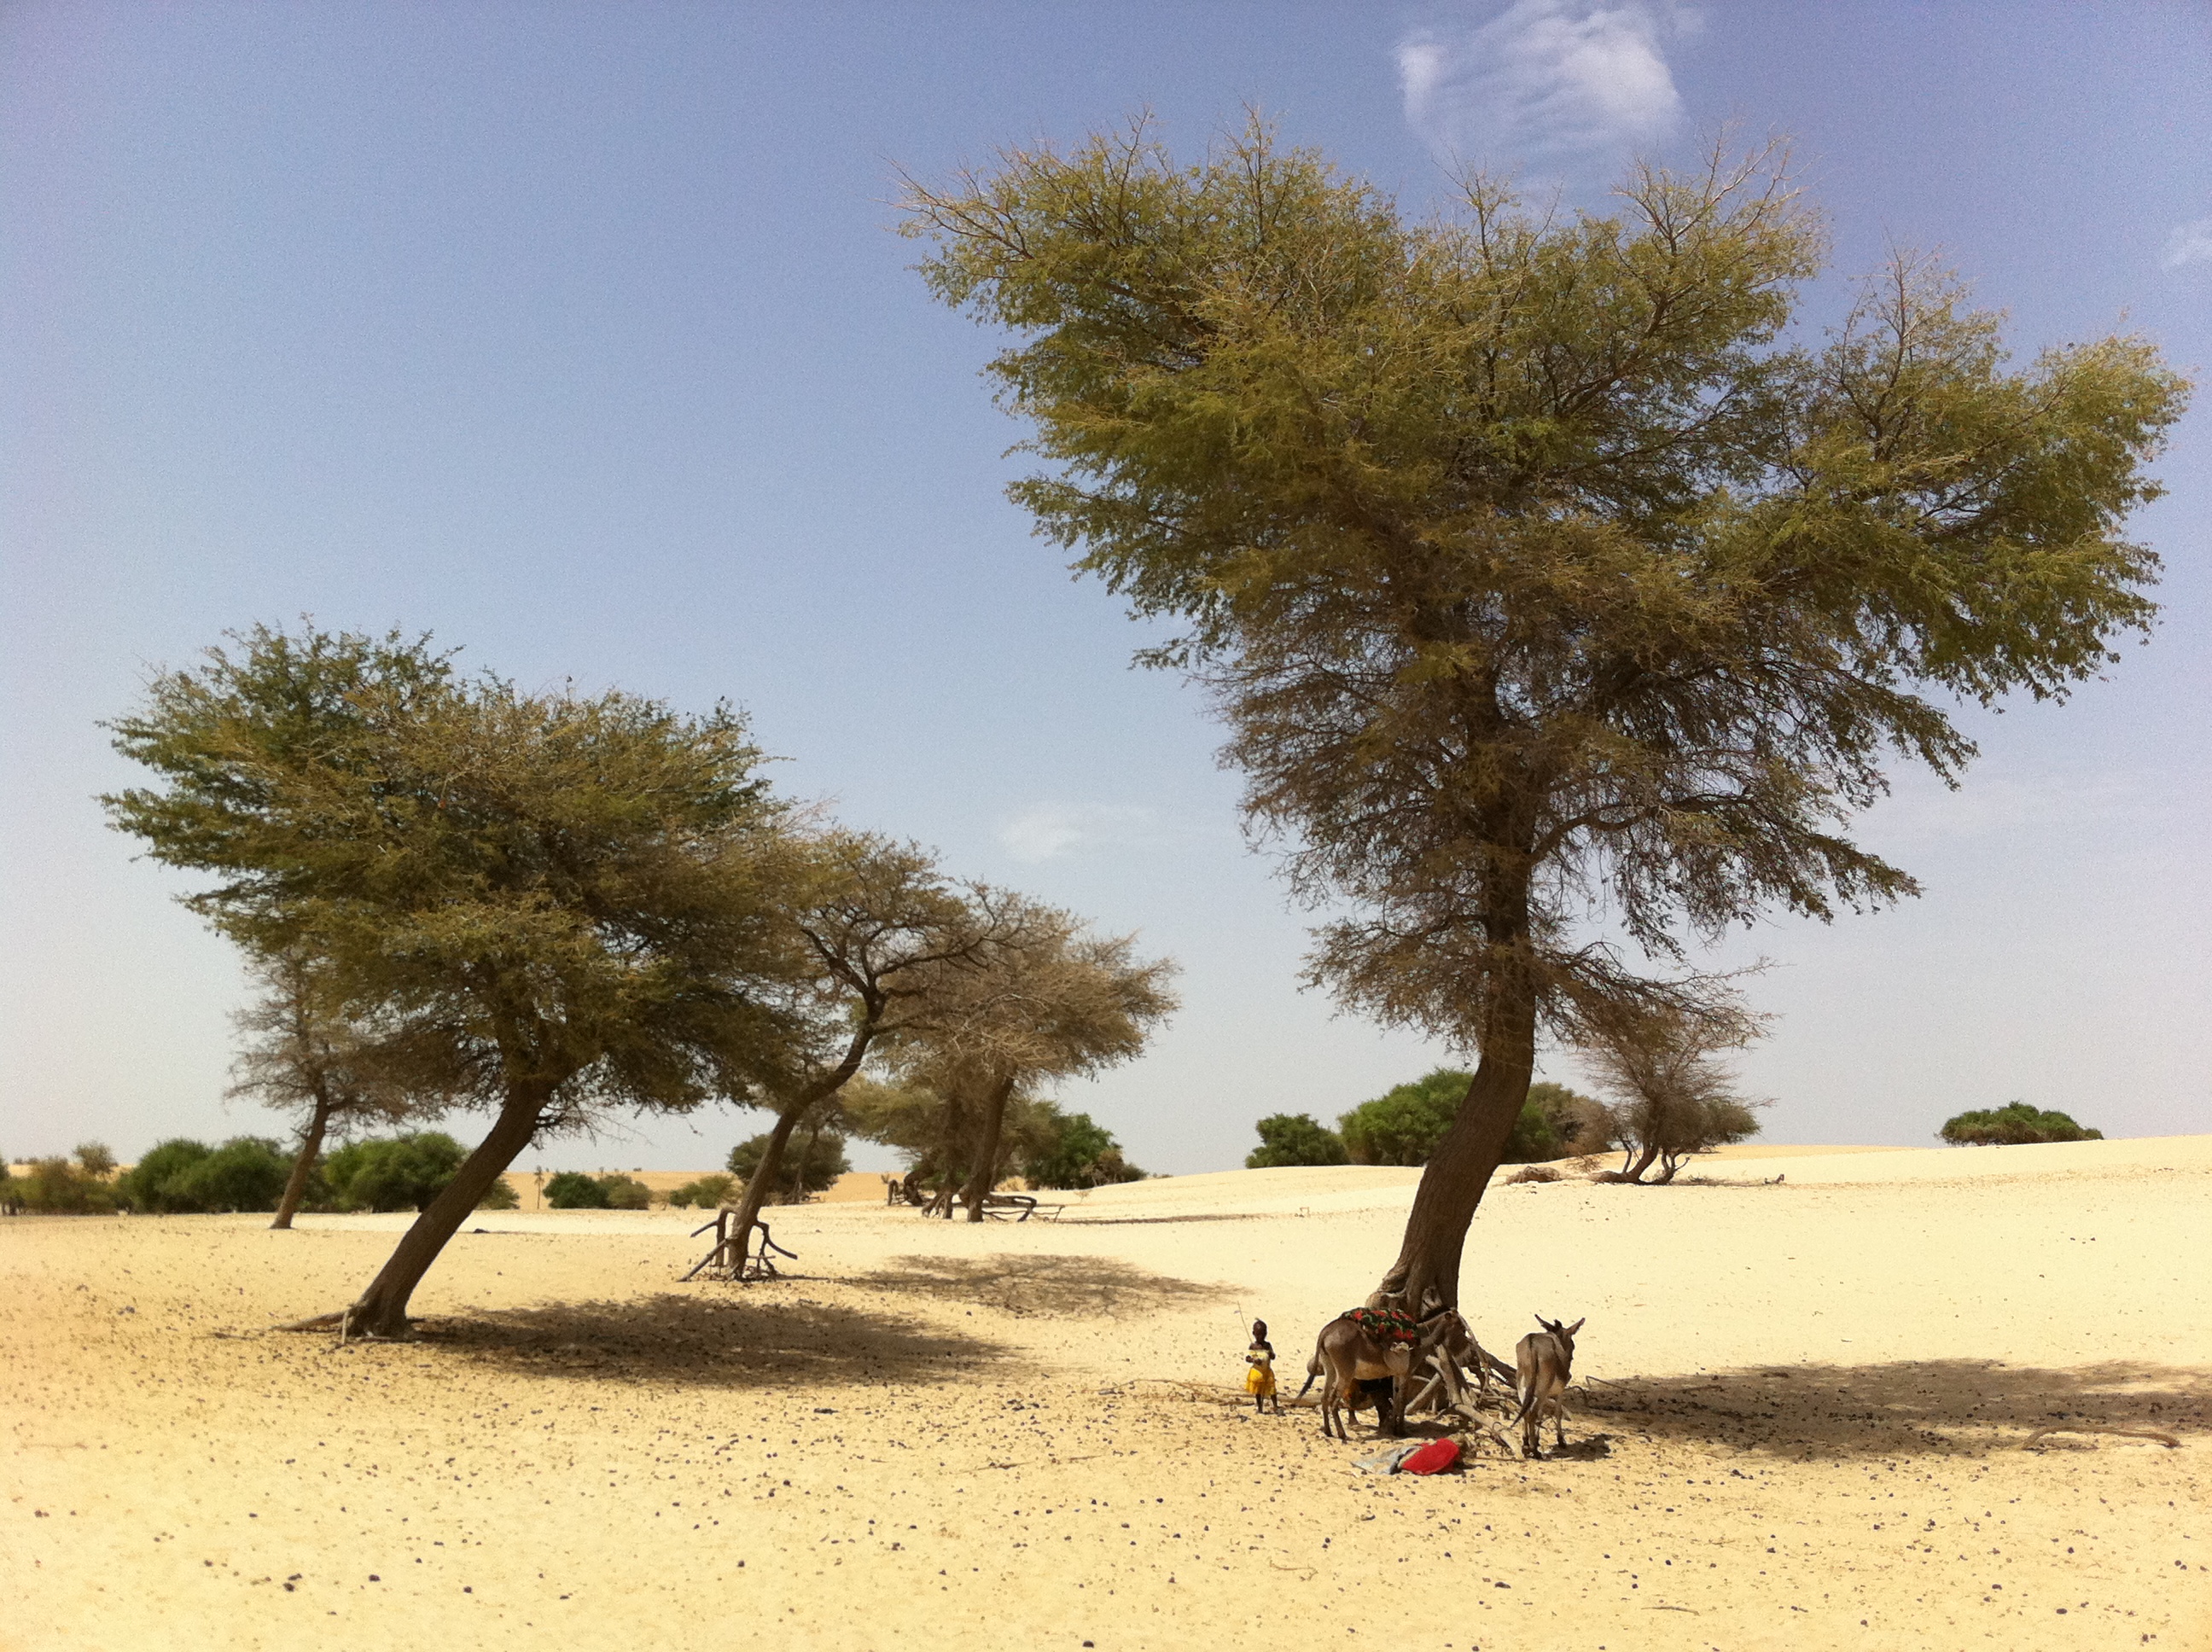 Sahelian landscape, photography by Christophe Valingot (CC BY-NC-ND 2.0)